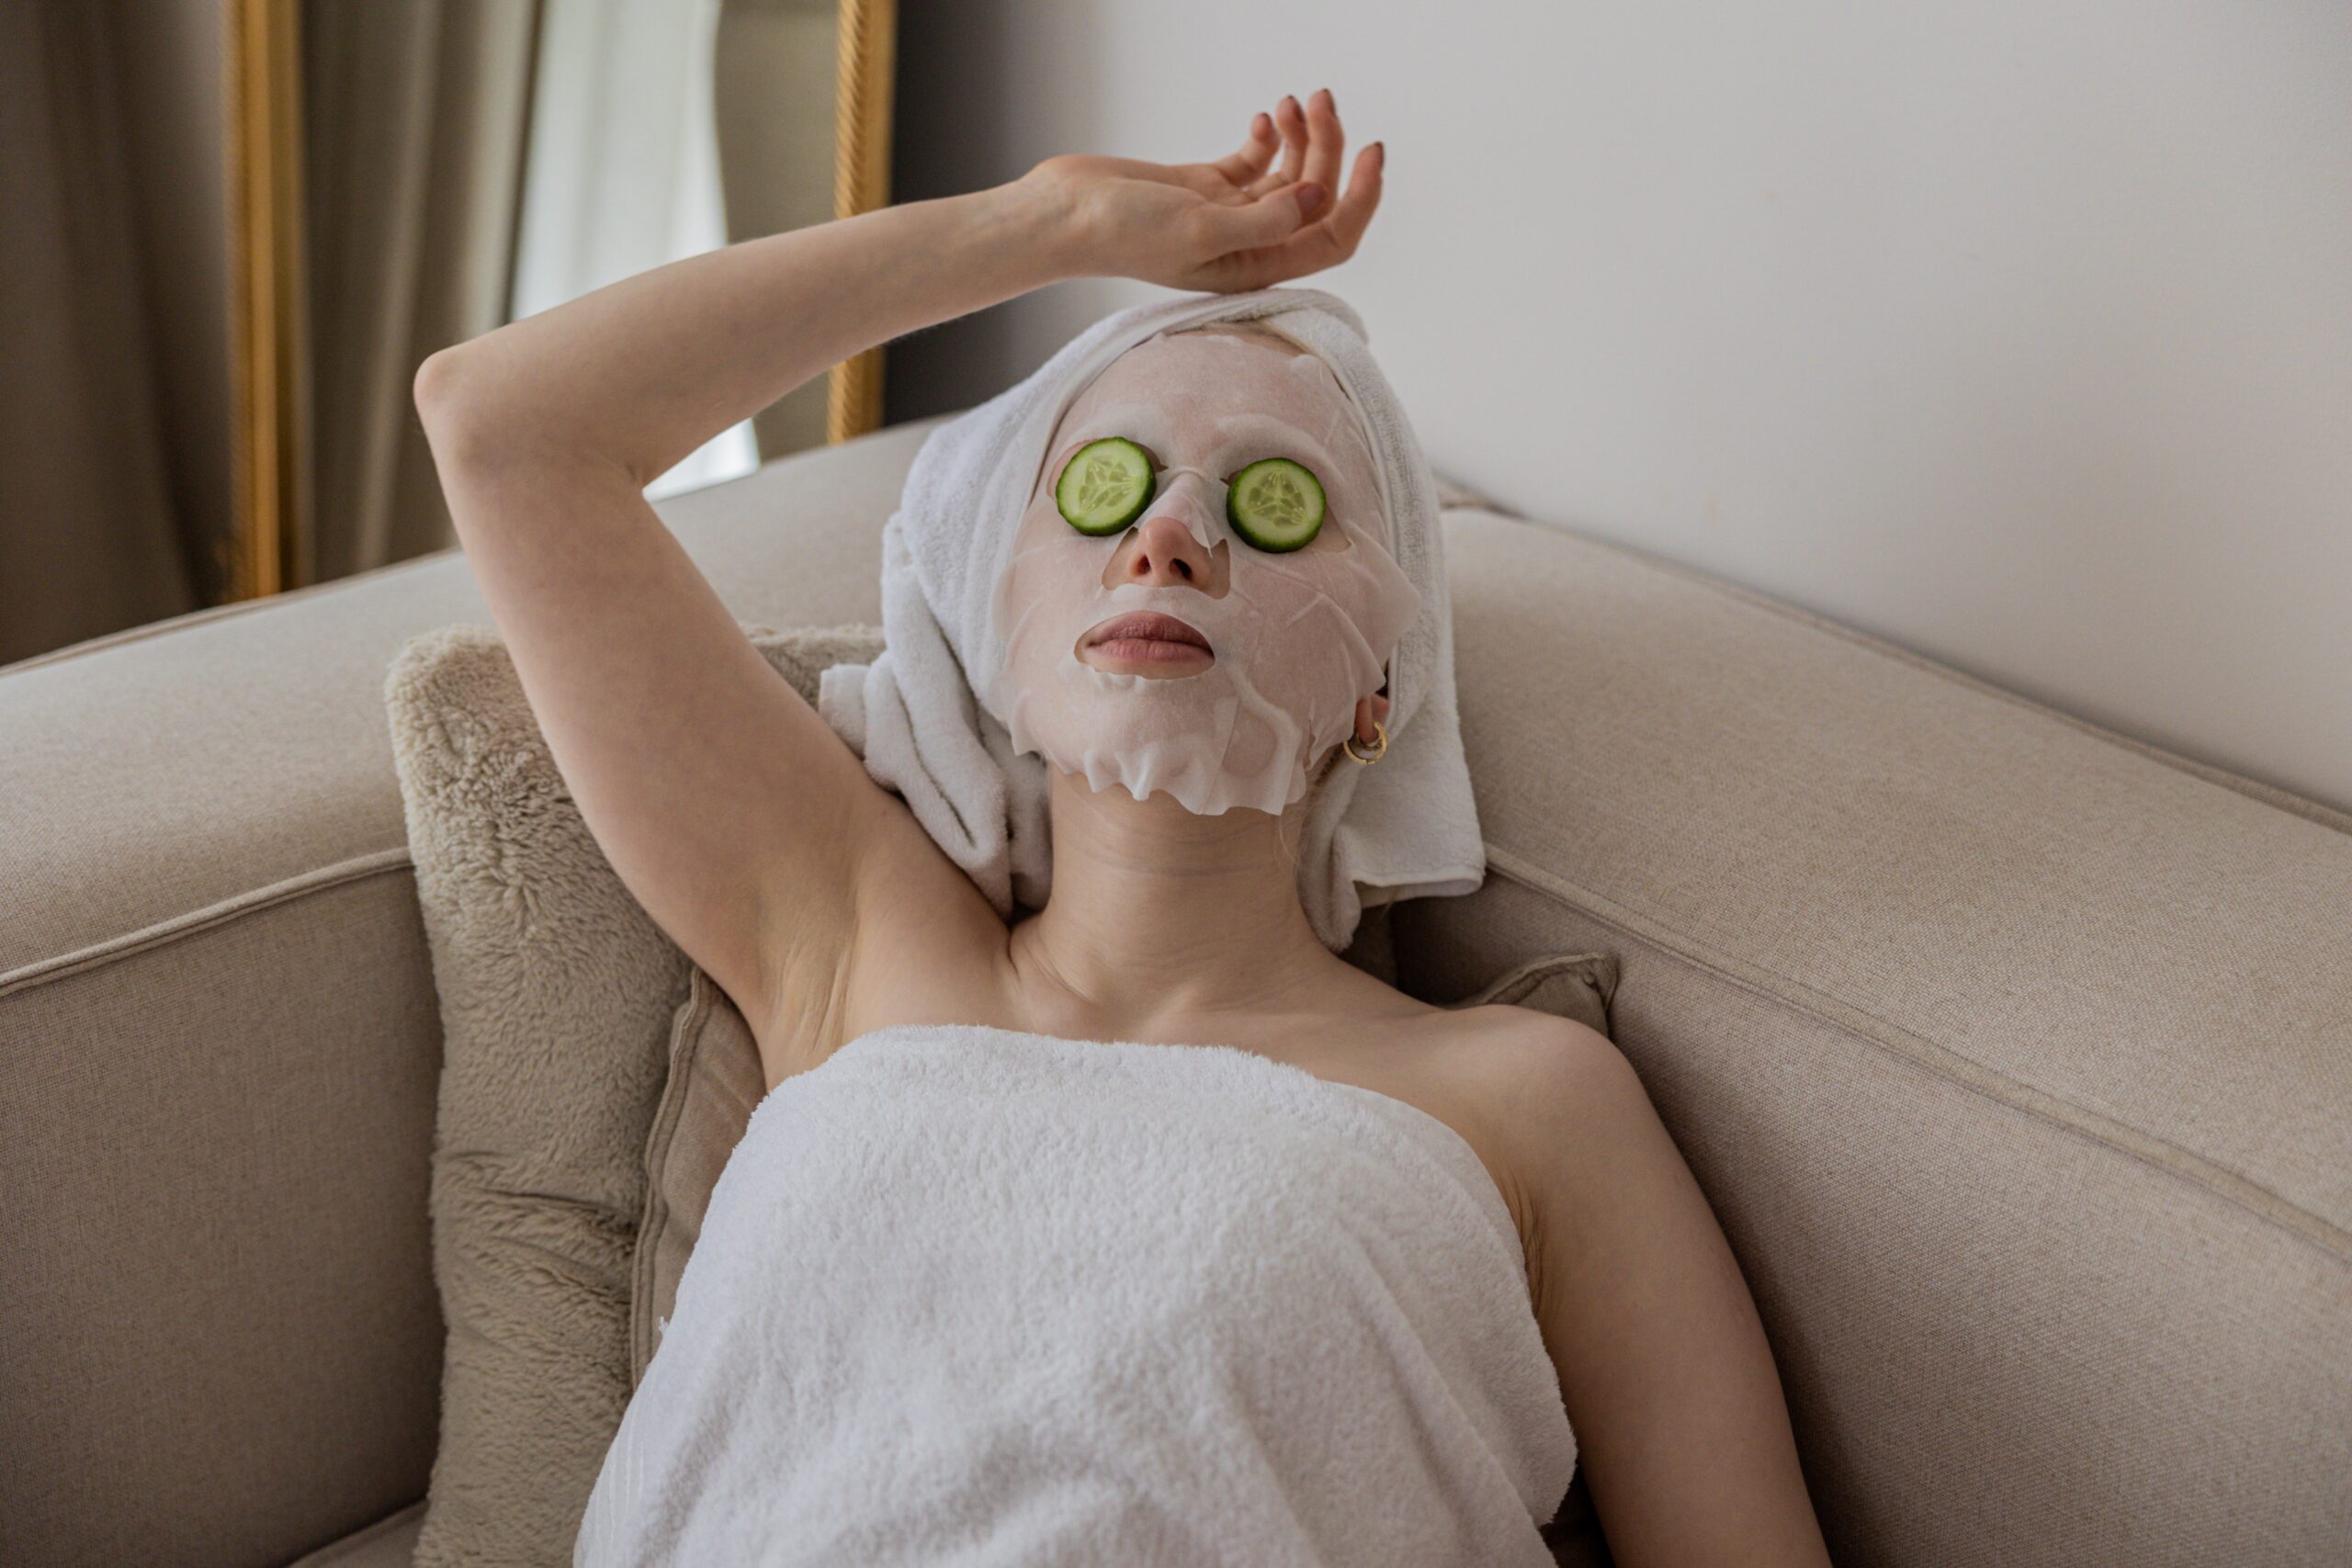 Featured image for “Erfahre, wie das Gesichtsschröpfen durch die Facial-Cupping-Massageform zu Entspannung und strahlender Haut führen kann.”